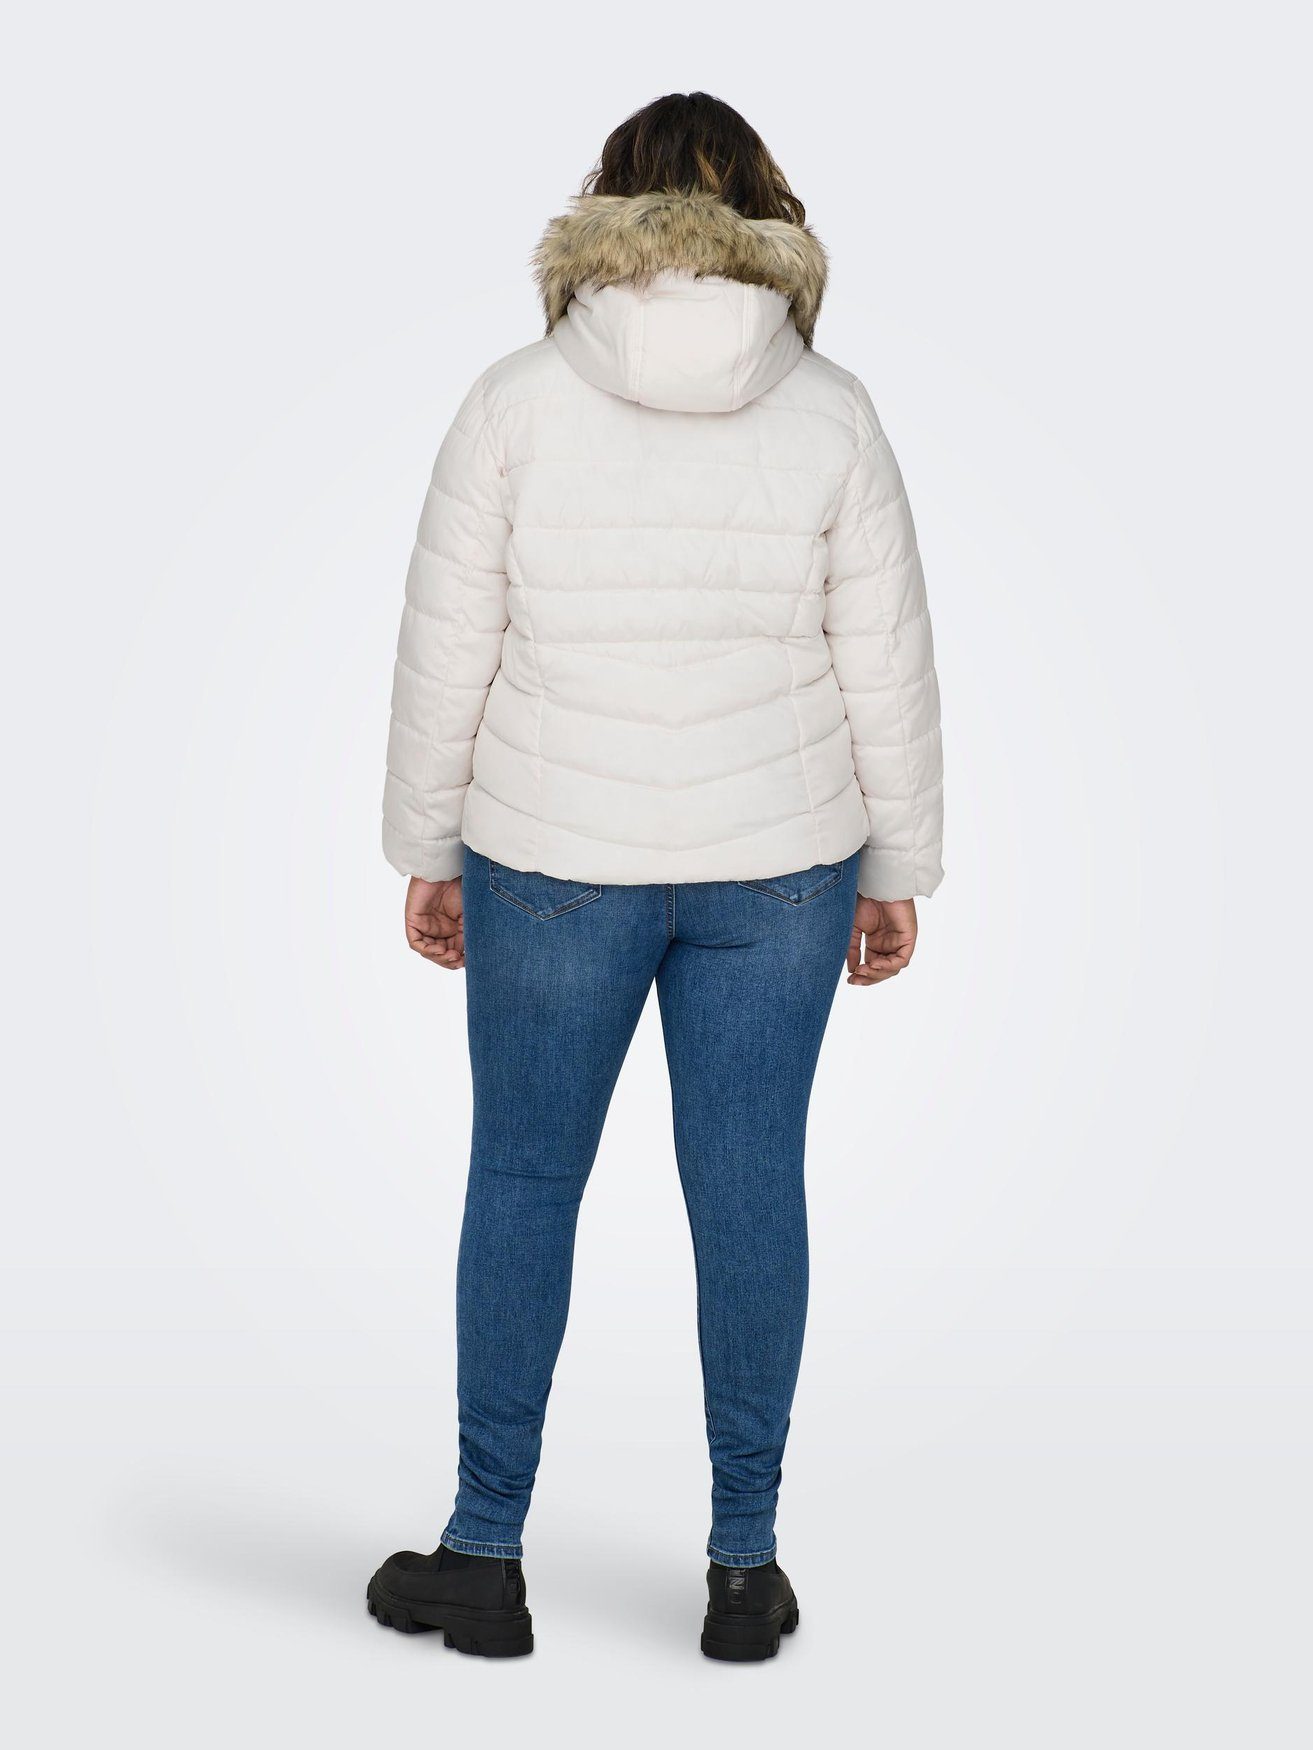 CARNEW CARMAKOMA Übergröße Jacke Size in Stepp Winterjacke Plus Weiß ONLY Winter 6580